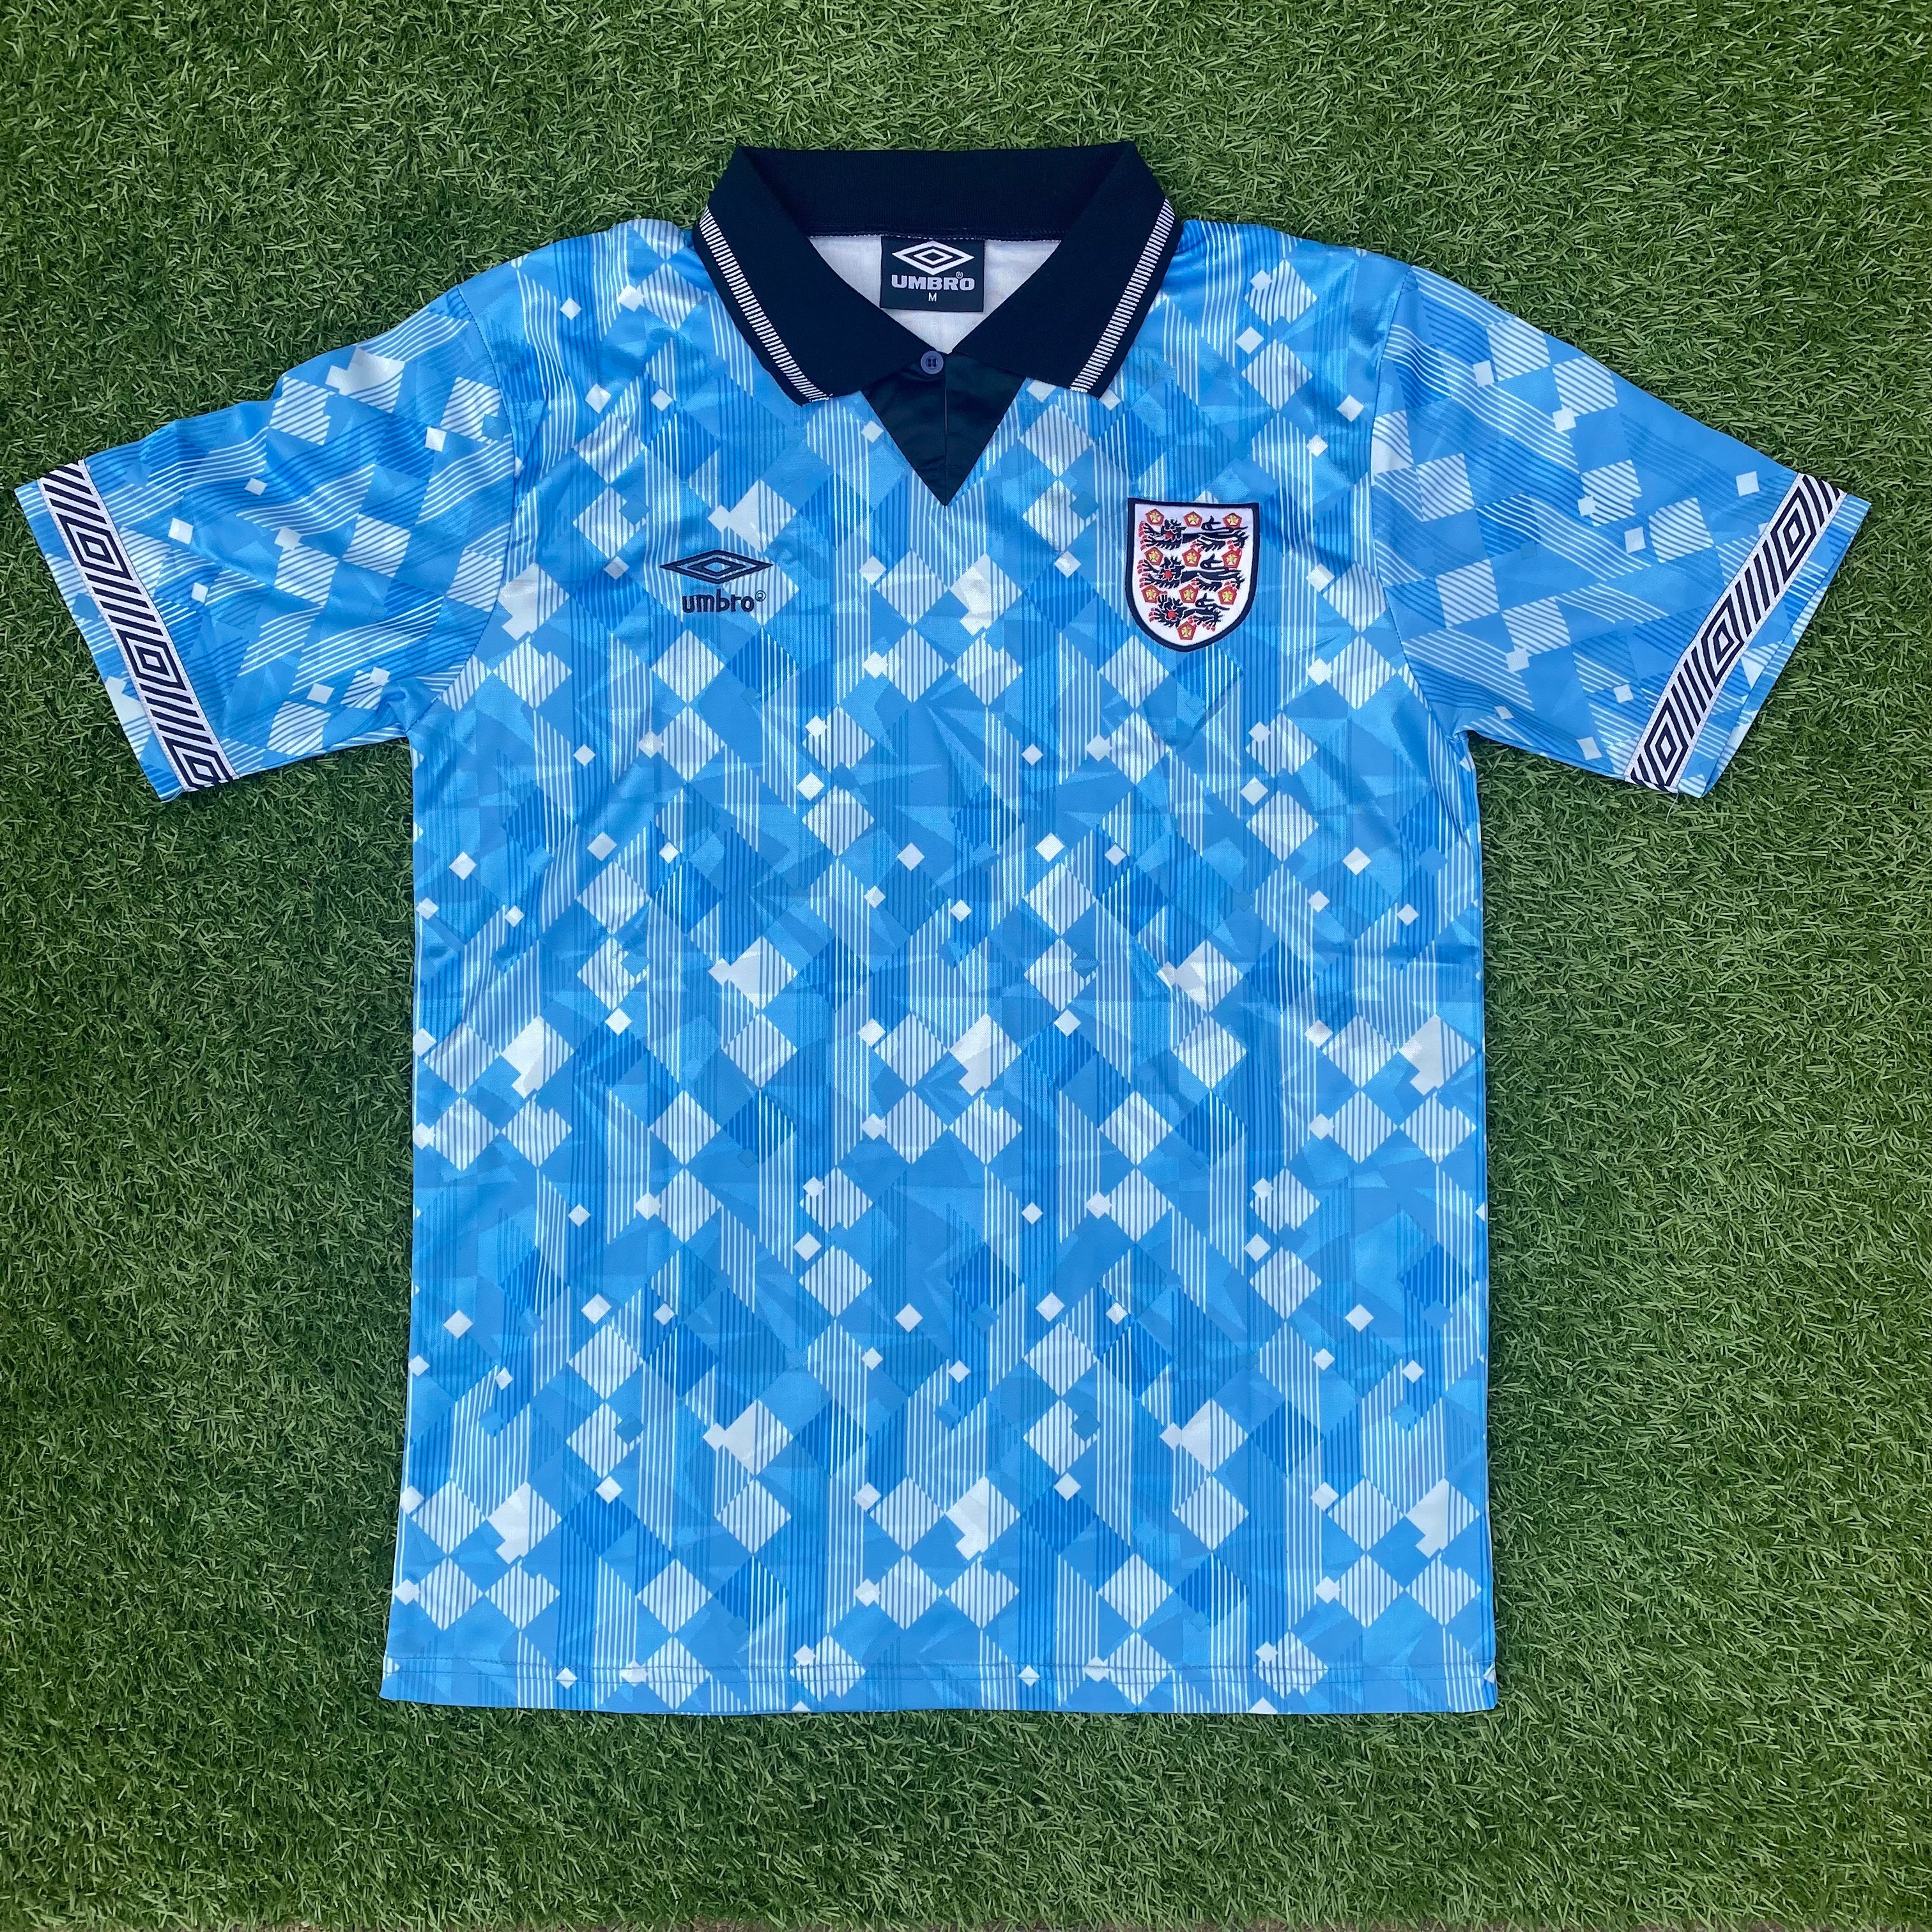 England 1990 Third Blue Retro Jersey